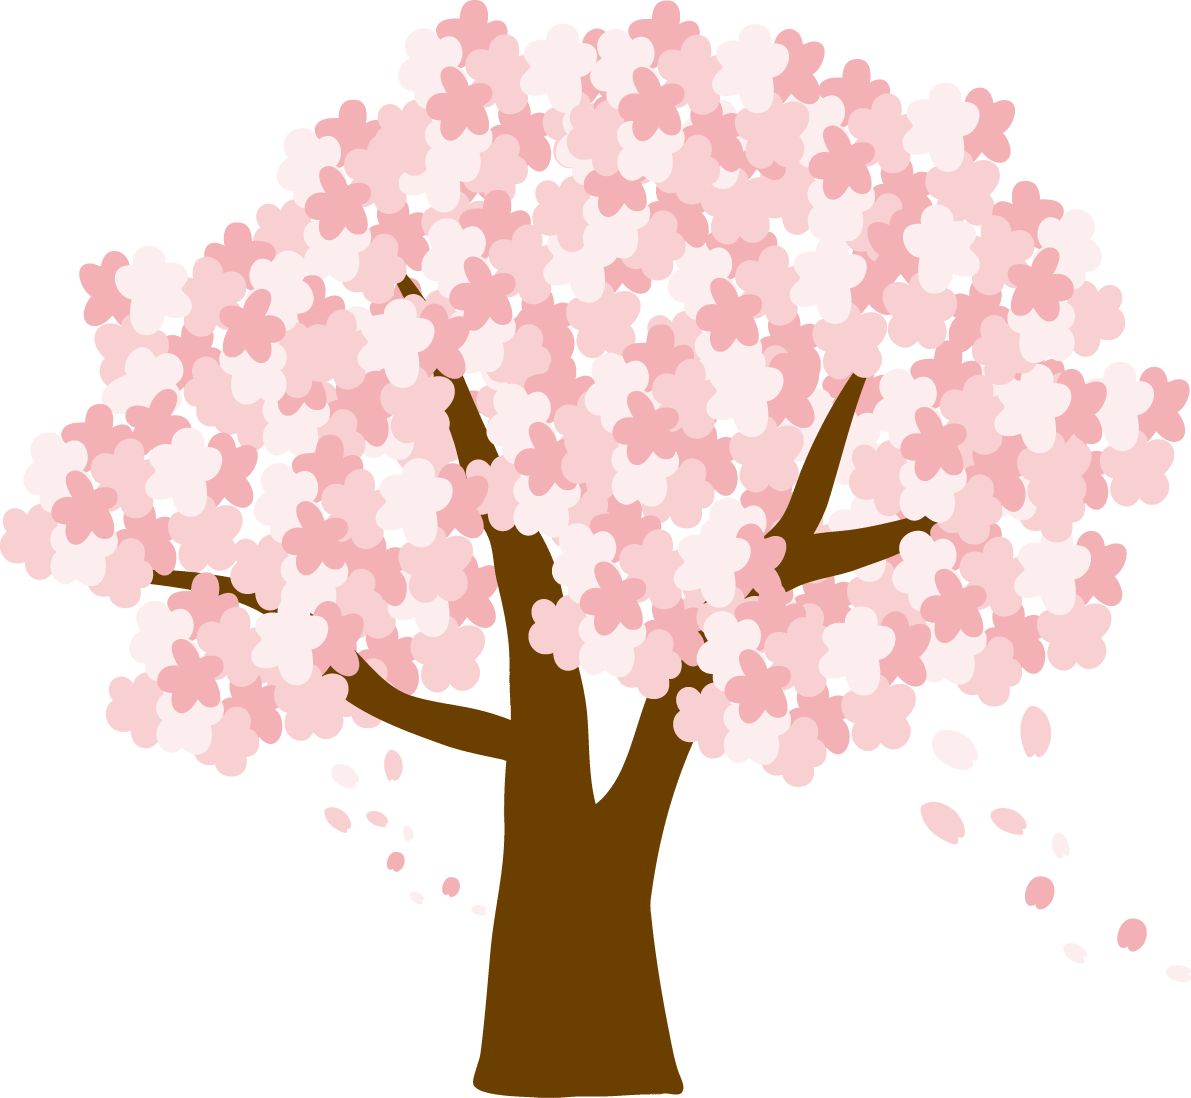 かわいい桜の花びらが舞う大きな桜の木